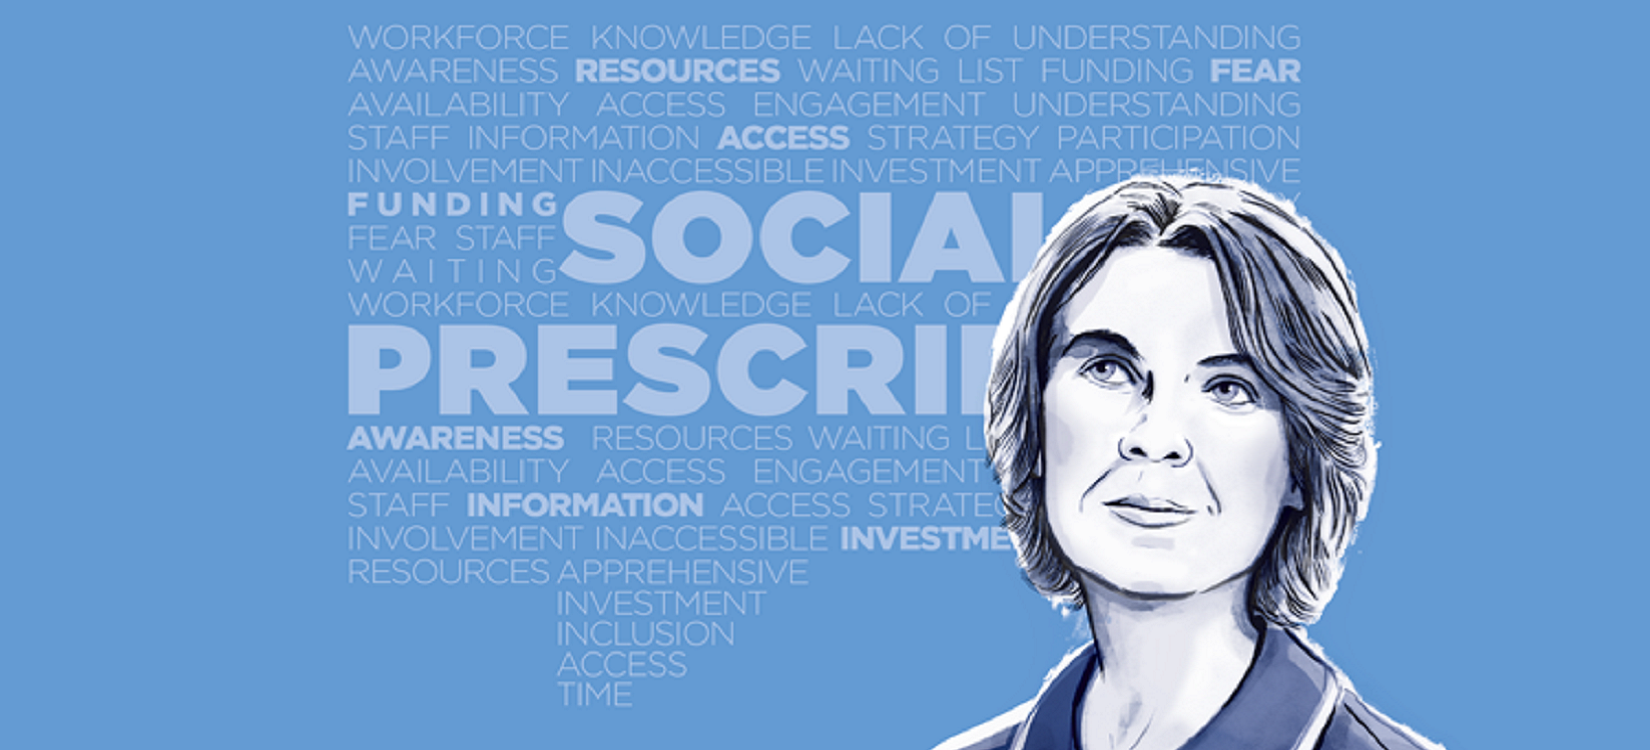 Social prescribing: Are nurses the missing link?